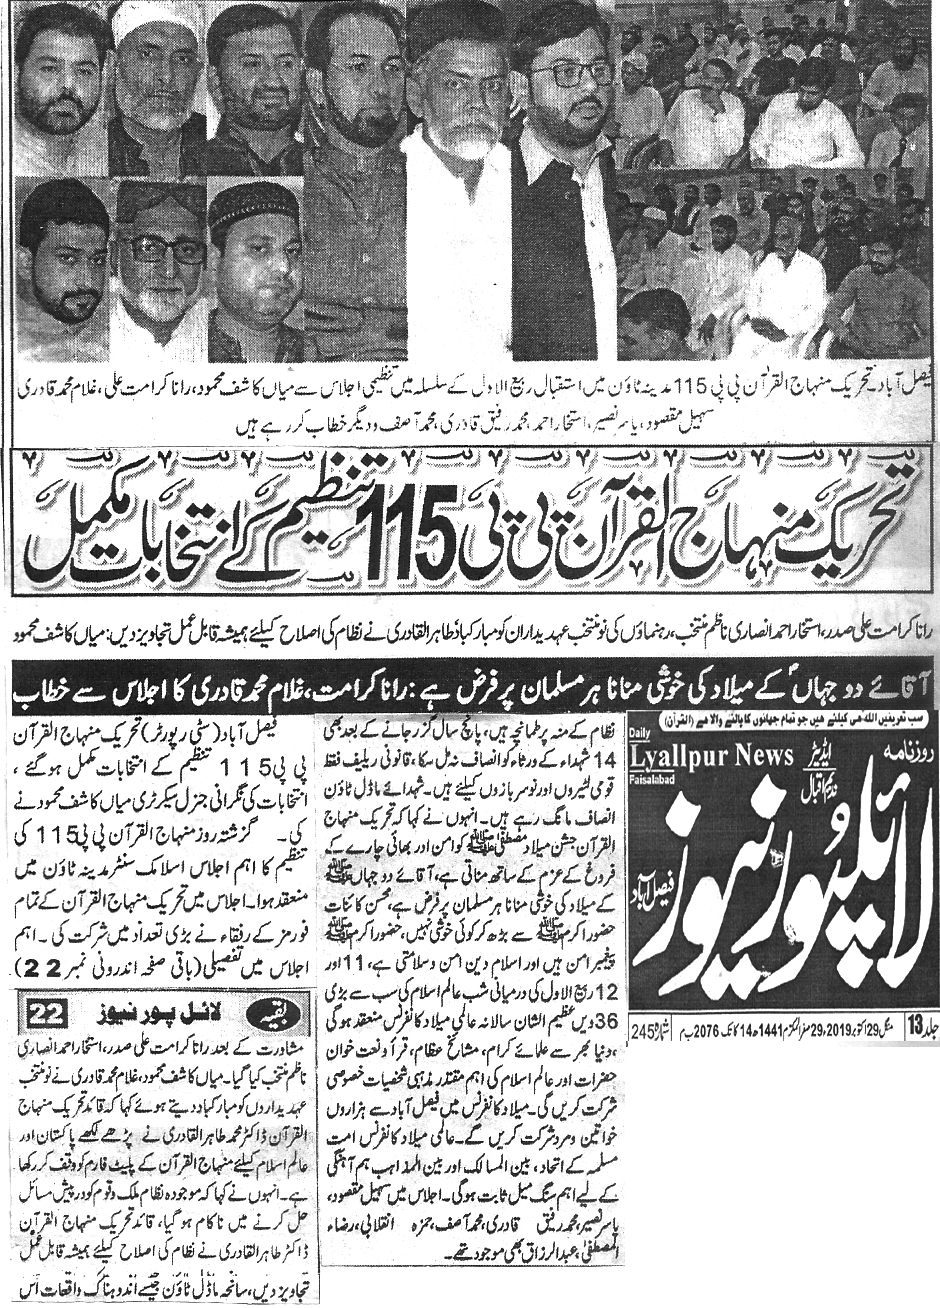 تحریک منہاج القرآن Minhaj-ul-Quran  Print Media Coverage پرنٹ میڈیا کوریج Daily Lyaiipur News page 4 